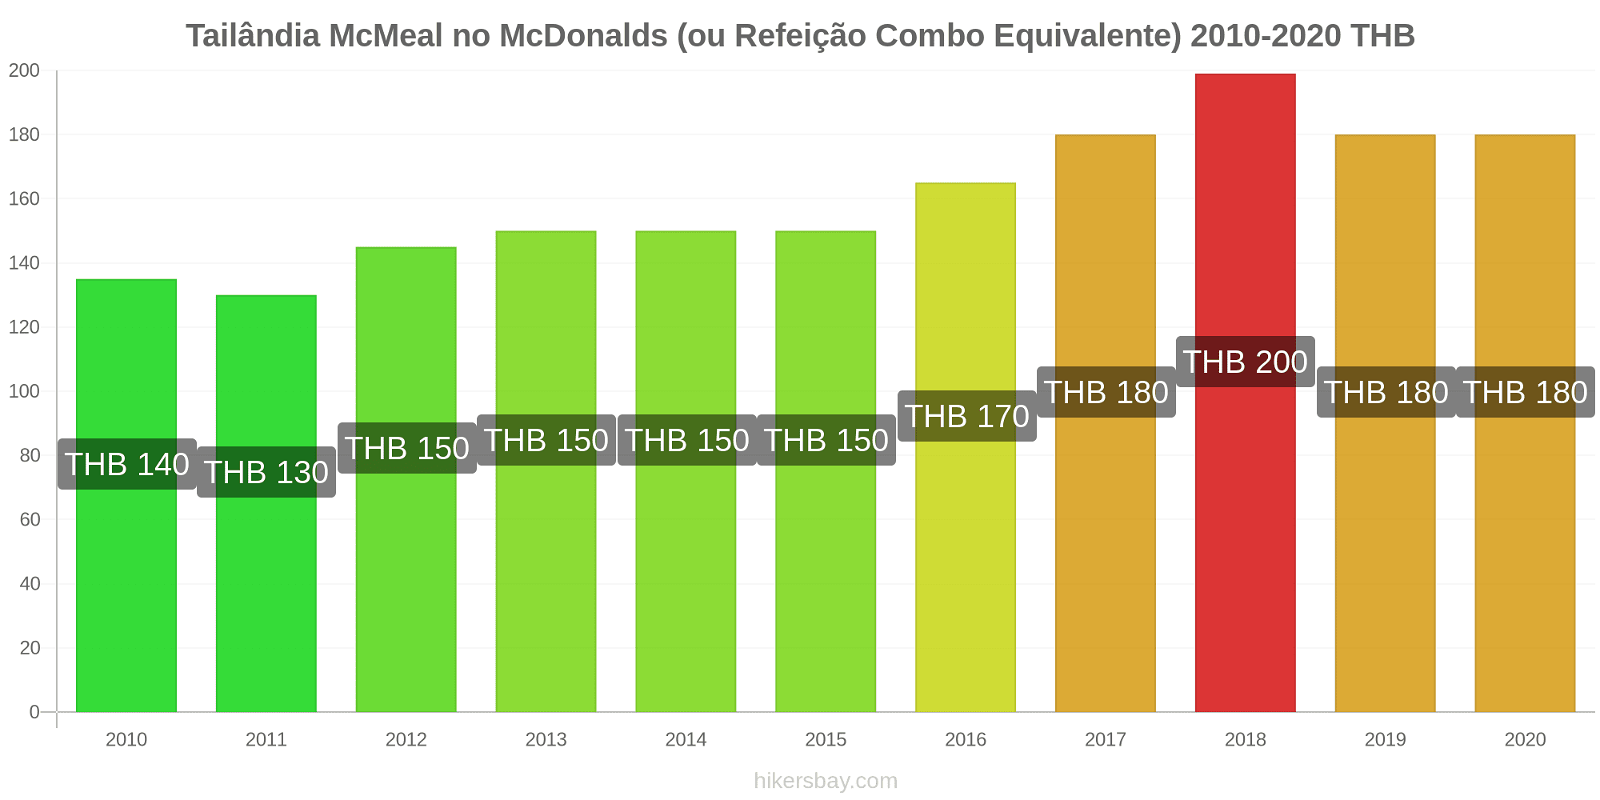 Tailândia variação de preço McMeal no McDonald ' s (ou refeição Combo equivalente) hikersbay.com